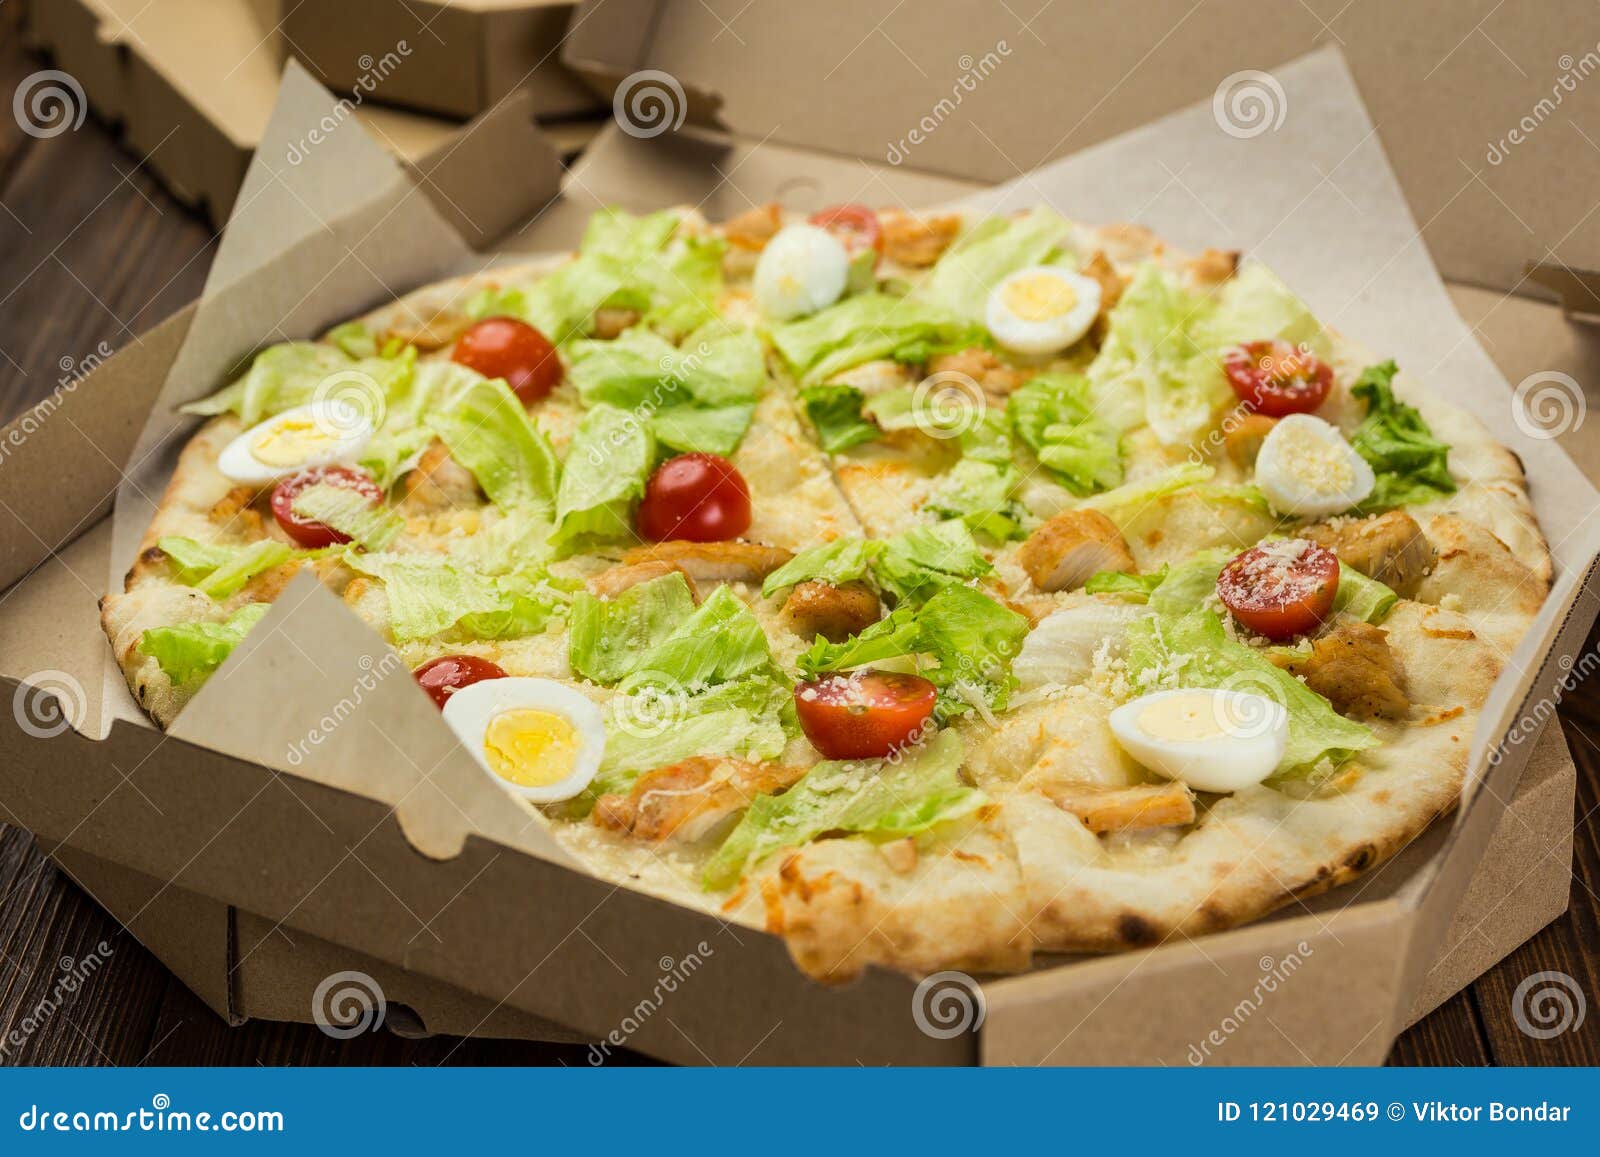 цезарь пицца с ветчиной и грибами 420 г фото 53